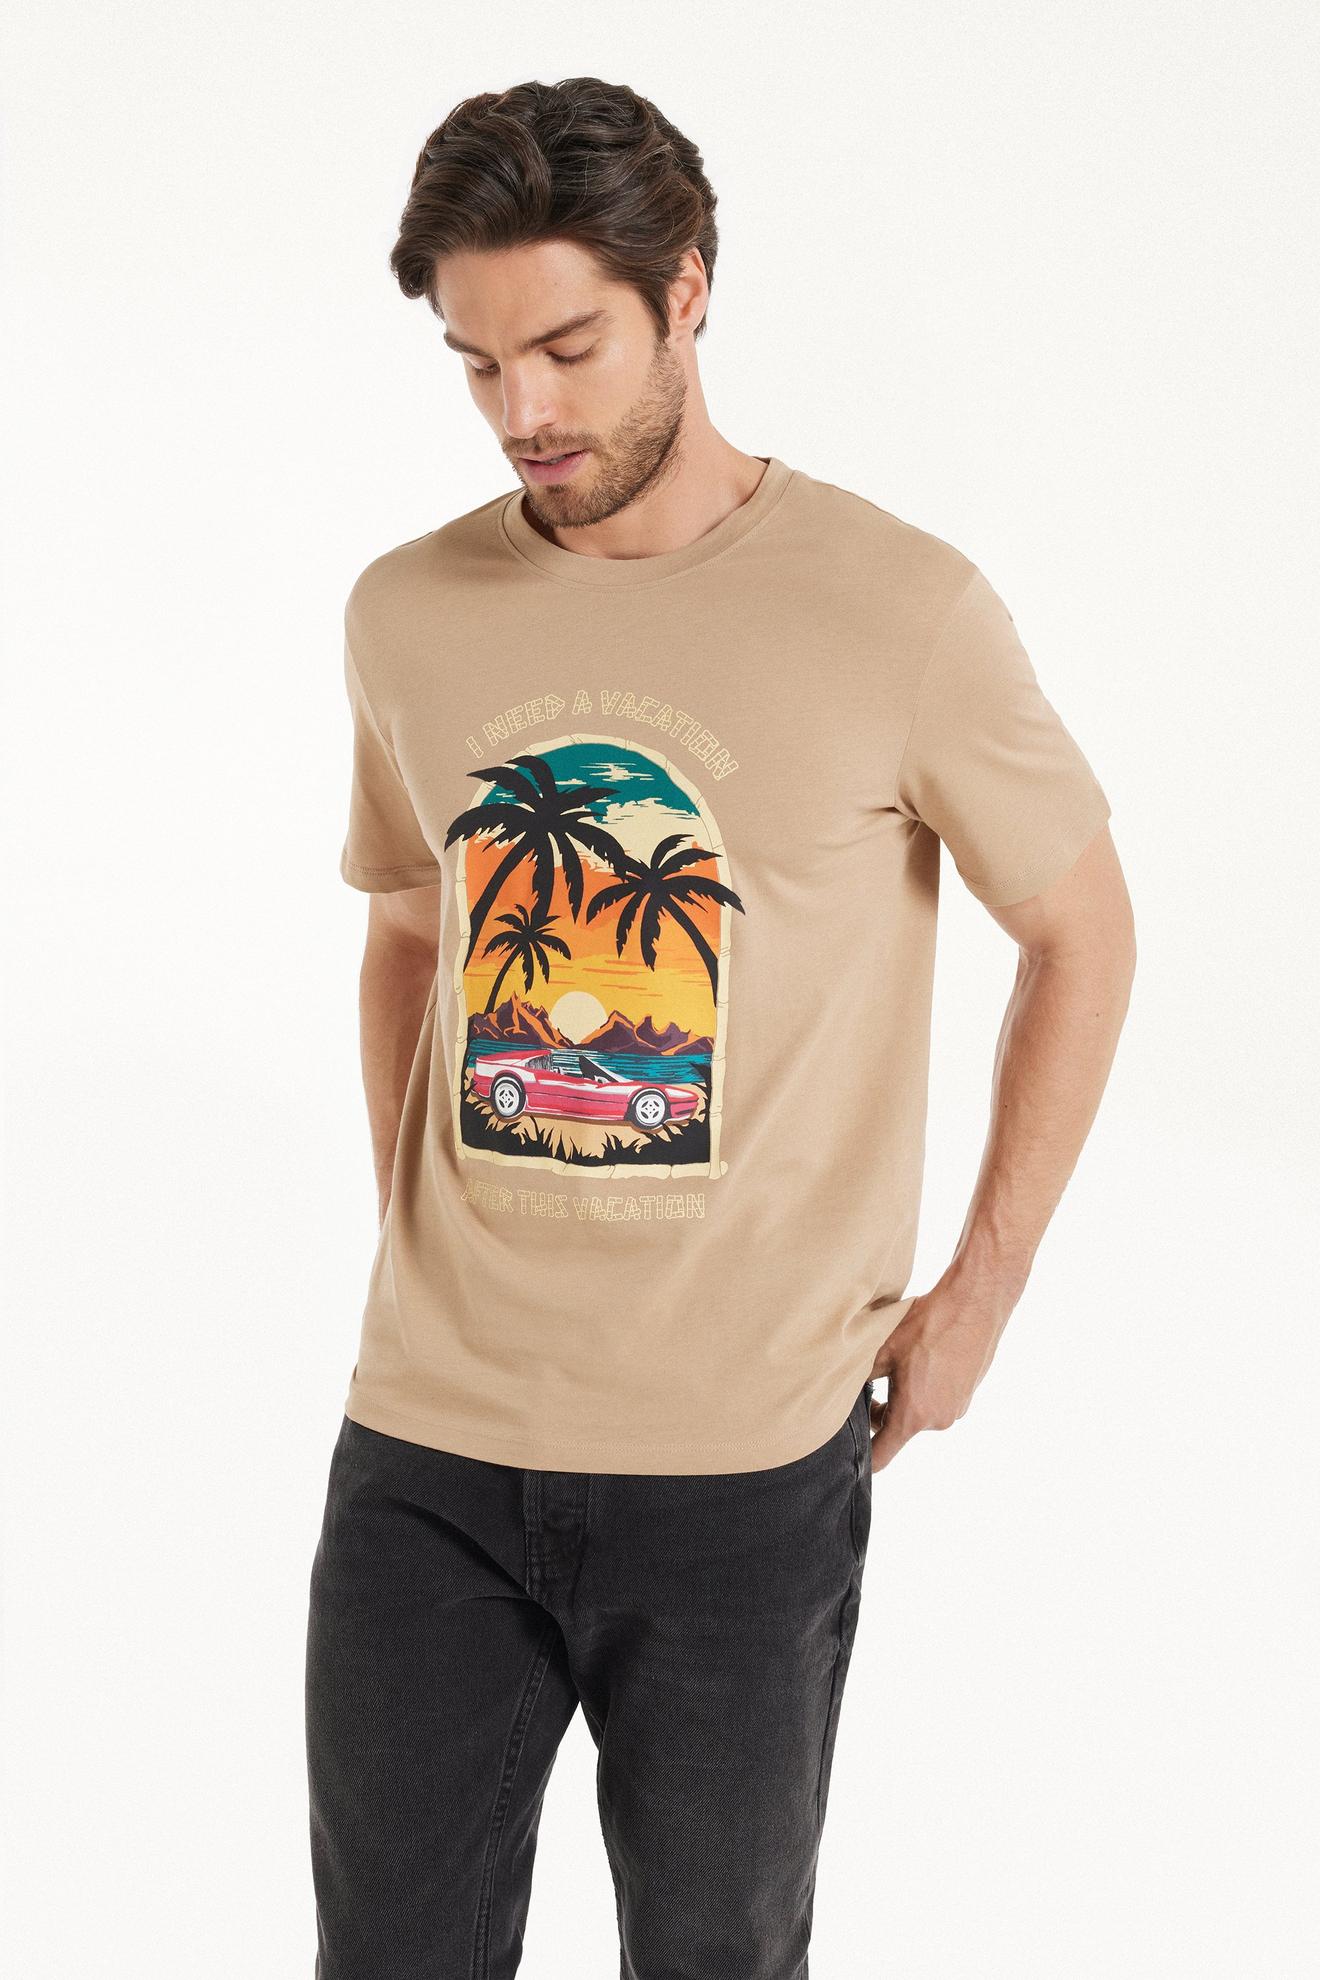 T-Shirt aus bedruckter Baumwolle für 9,99€ in Tezenis